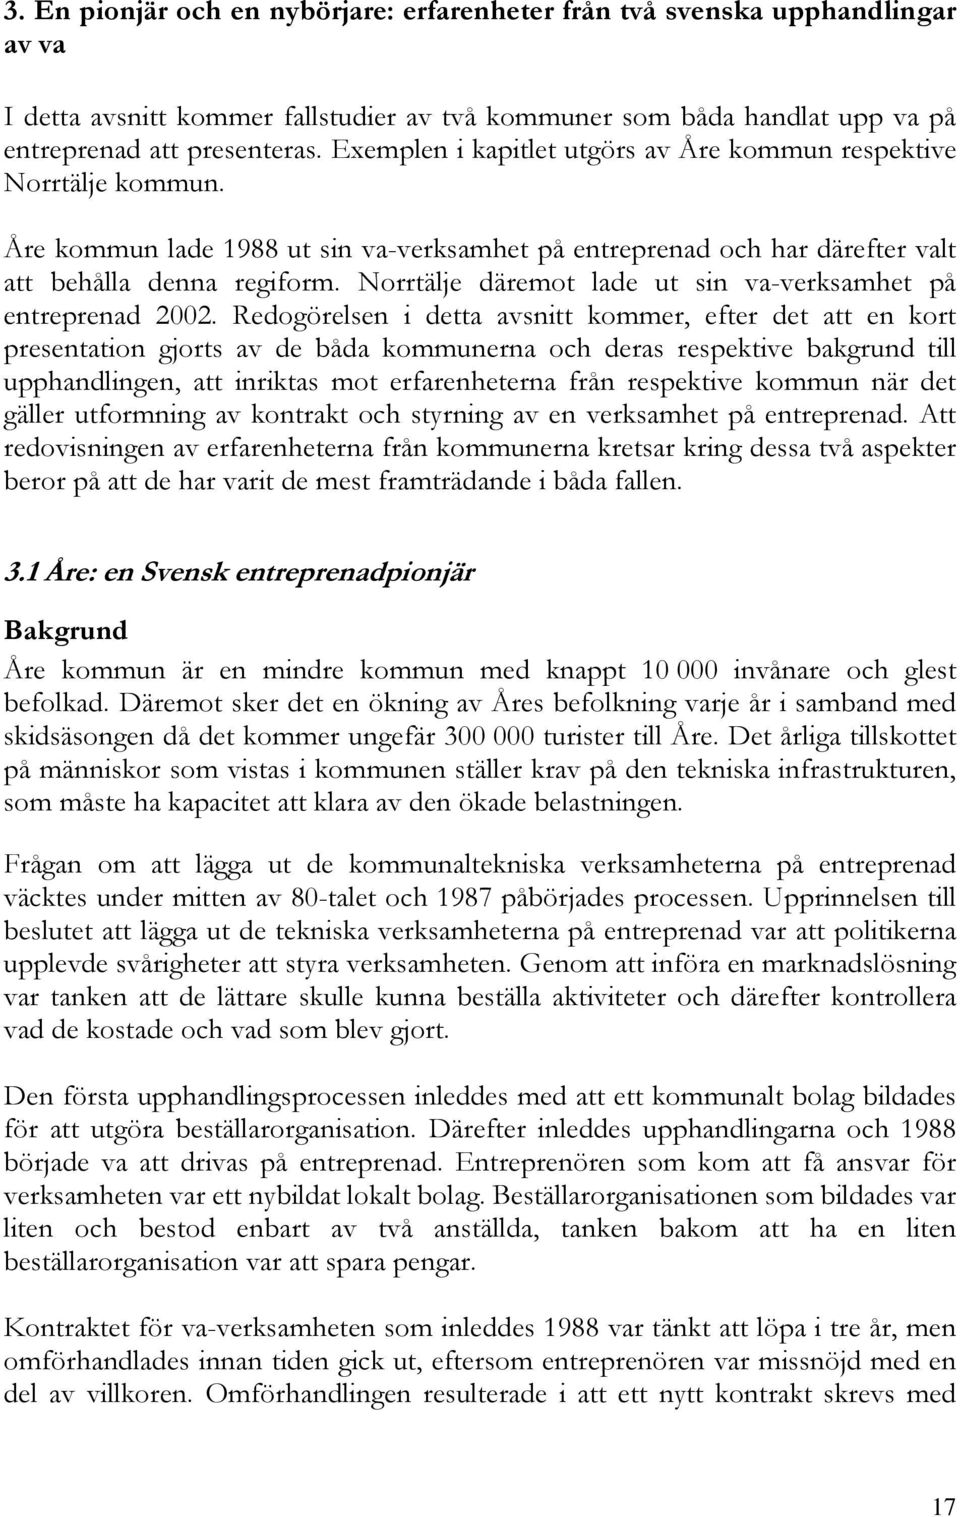 Norrtälje däremot lade ut sin va-verksamhet på entreprenad 2002.